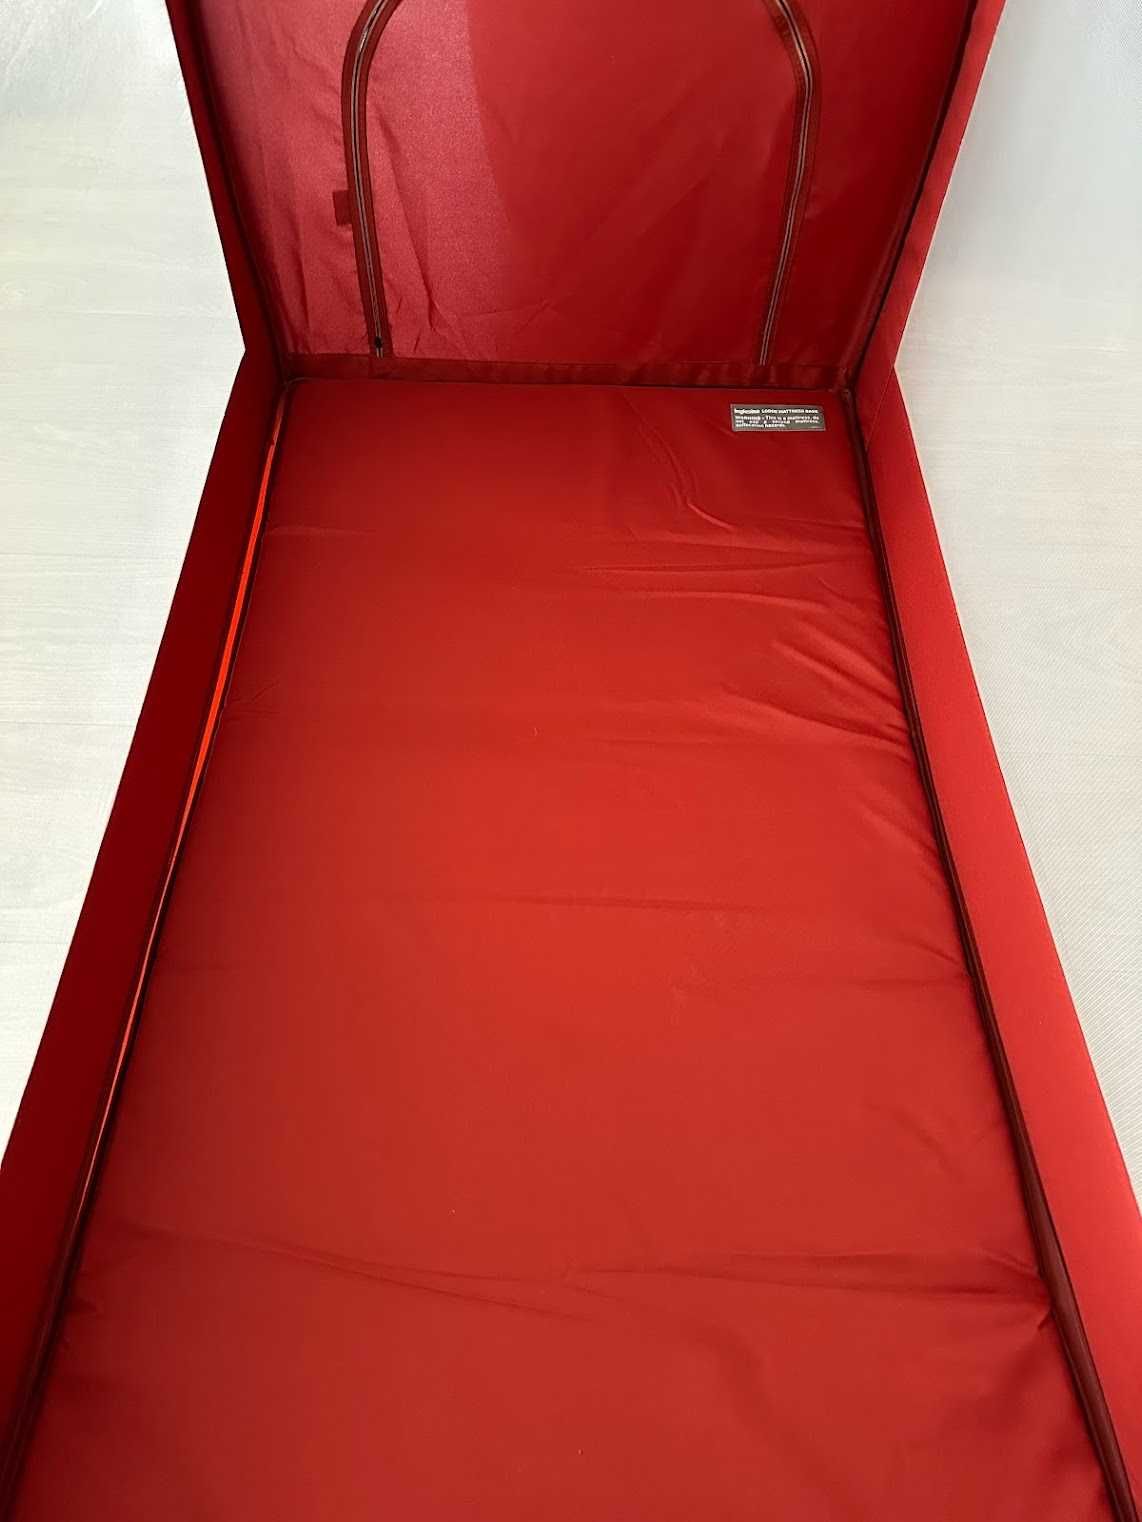 Nowe łóżeczko turystyczne Inglesina Lodge Red